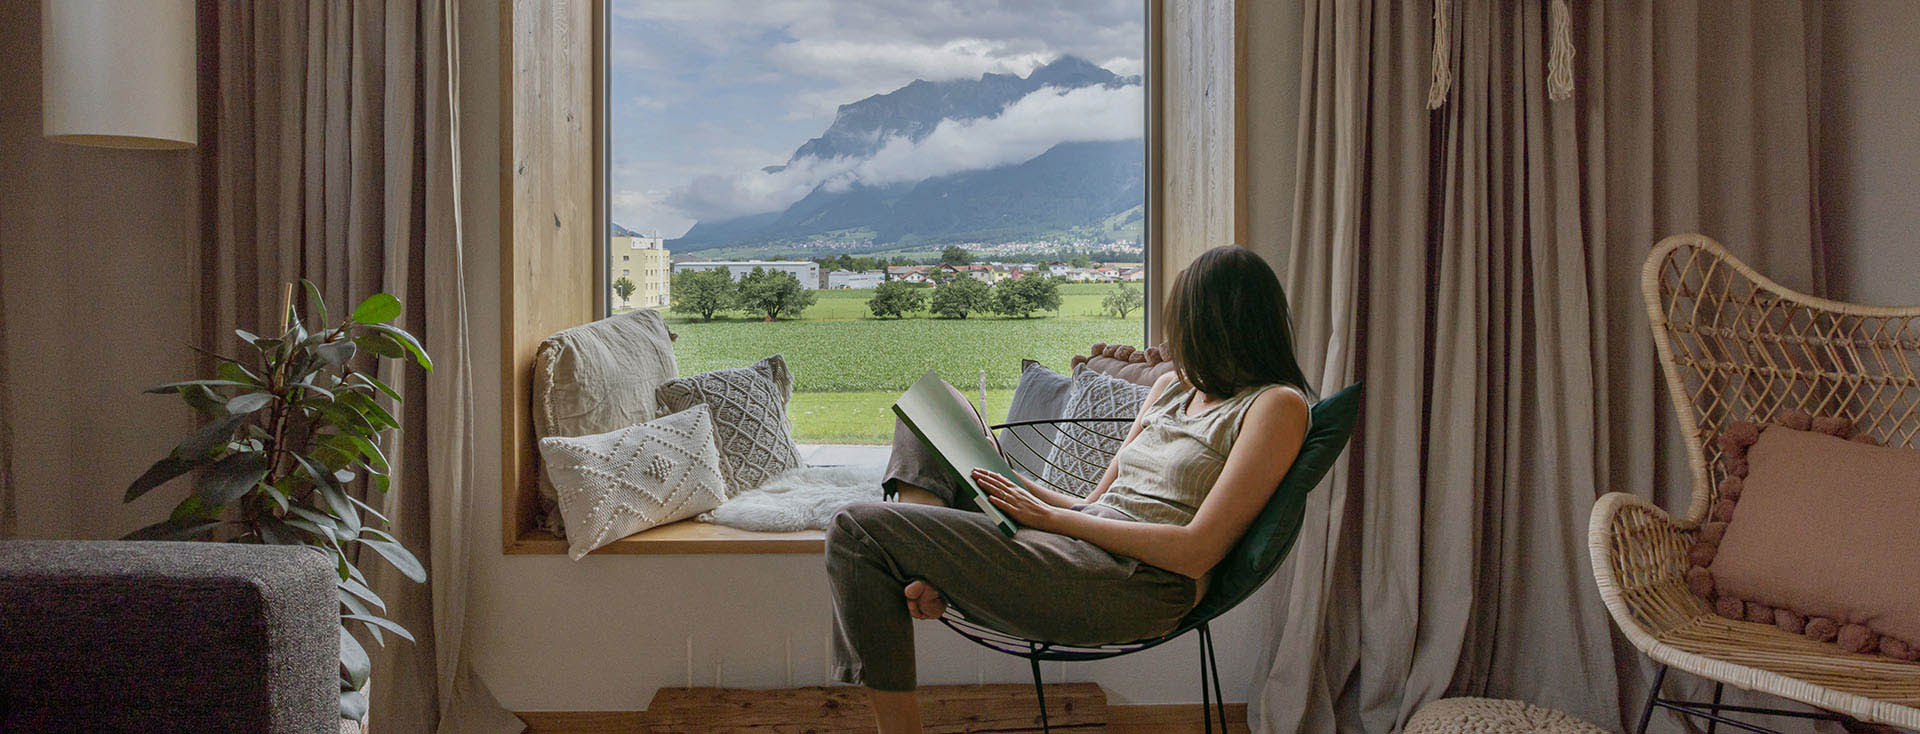 [Translate to it-ch:] Eine Person liest entspannt in einem Stuhl sitzend ein Buch, mit Blick auf eine idyllische Landschaft mit Bergen und grünem Feld durch ein großes Fenster.